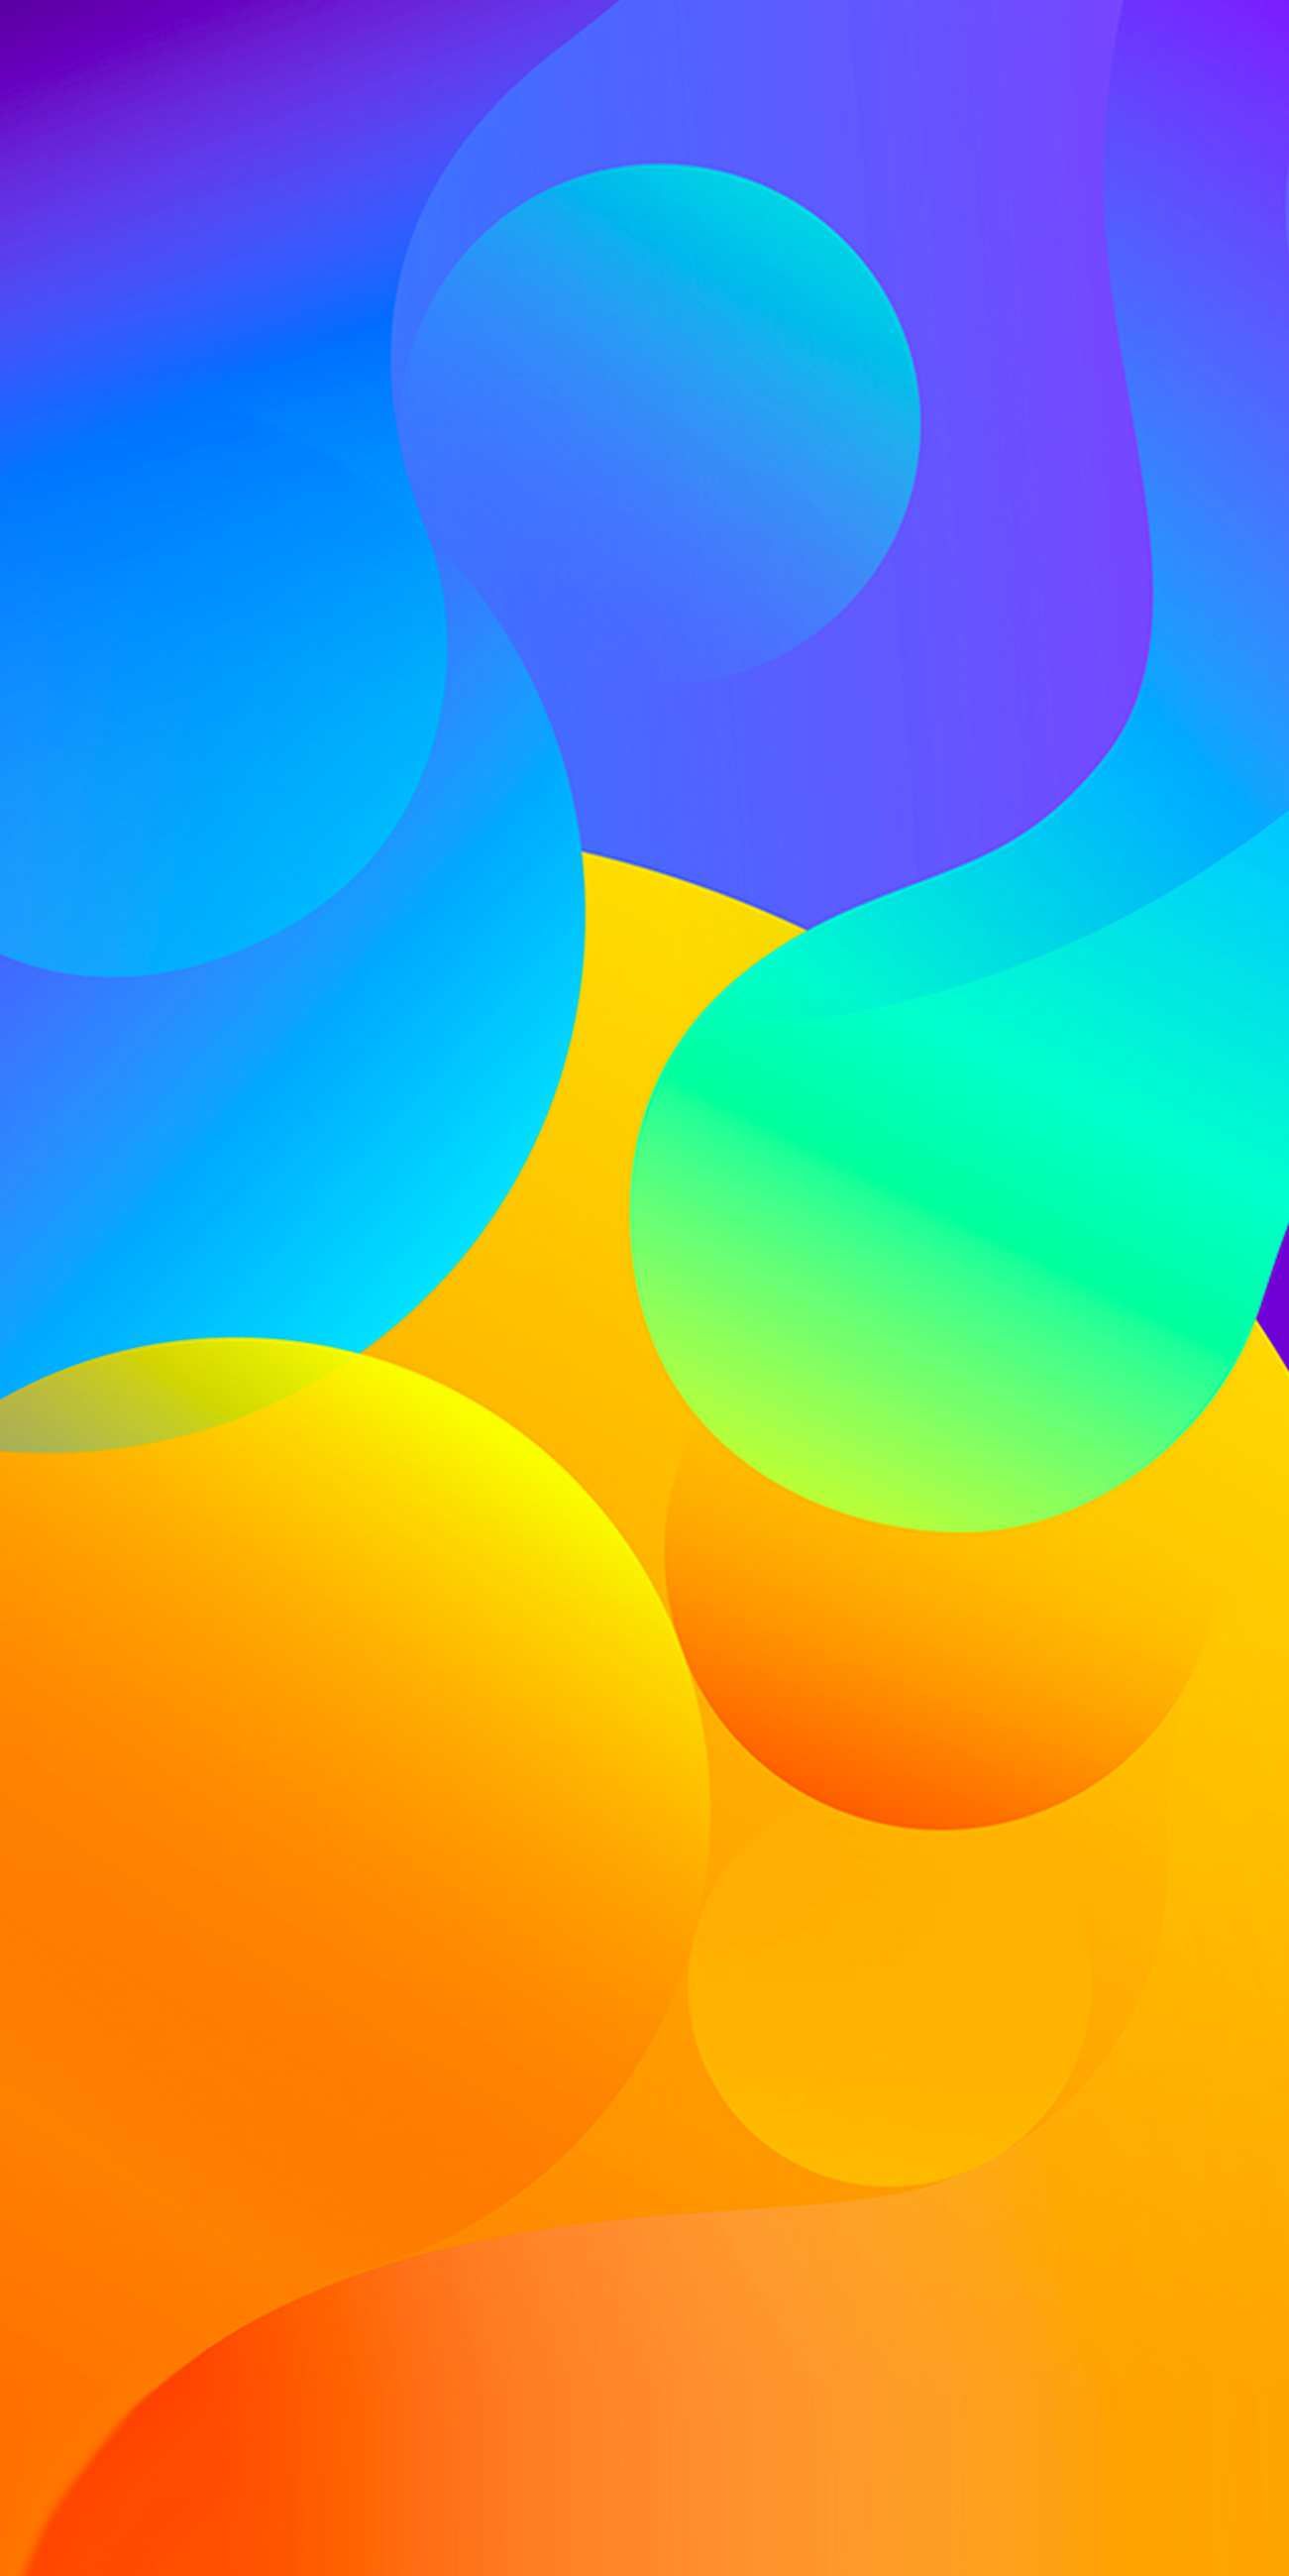 Color Circles Abstract iPhone Fondos de pantalla | Fondos de iPhone en 2019